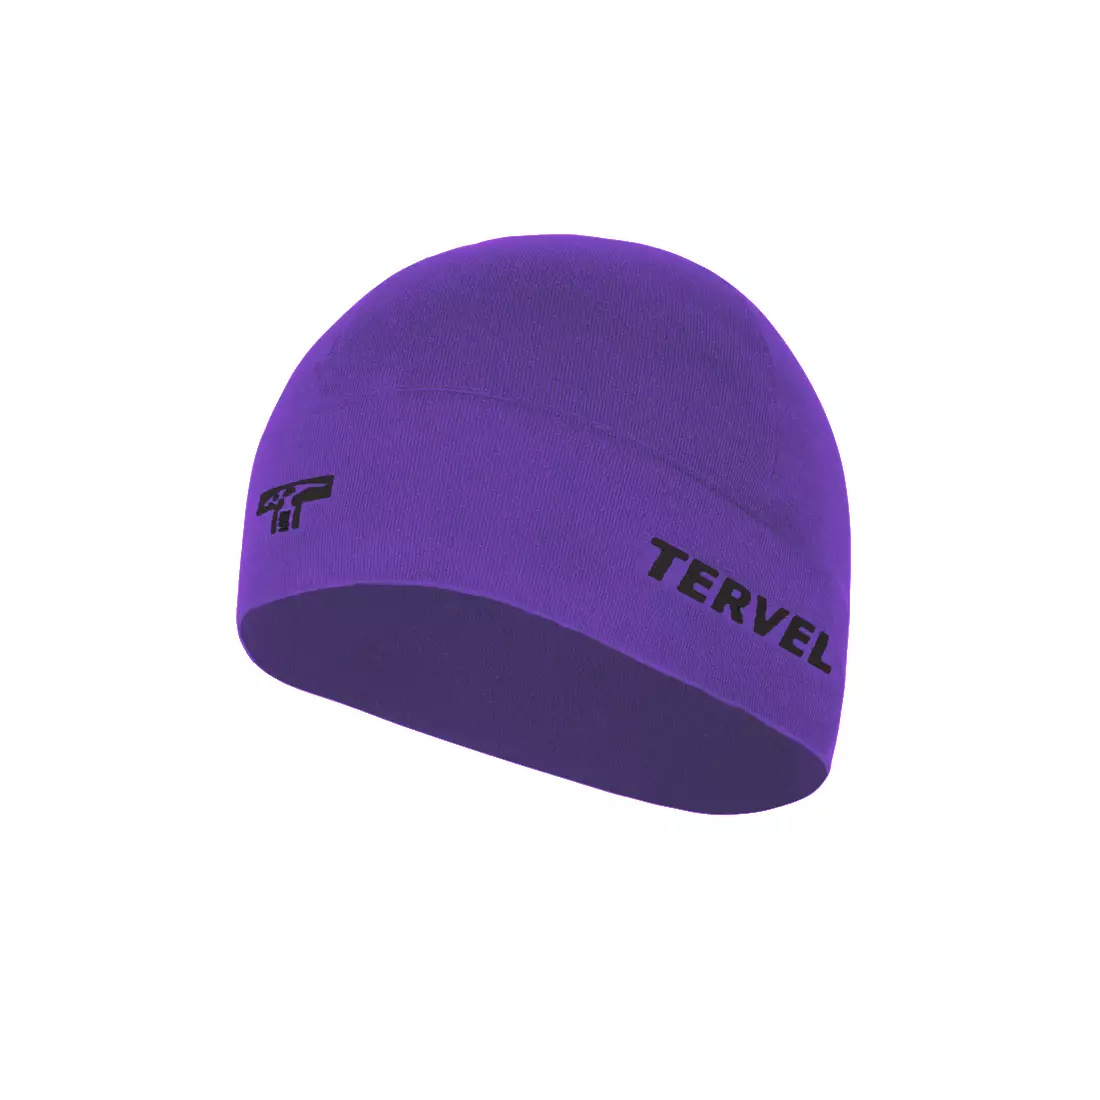 TERVEL 7001 - COMFORTLINE - tréninková čepice, barva: Fialová, velikost: Univerzální